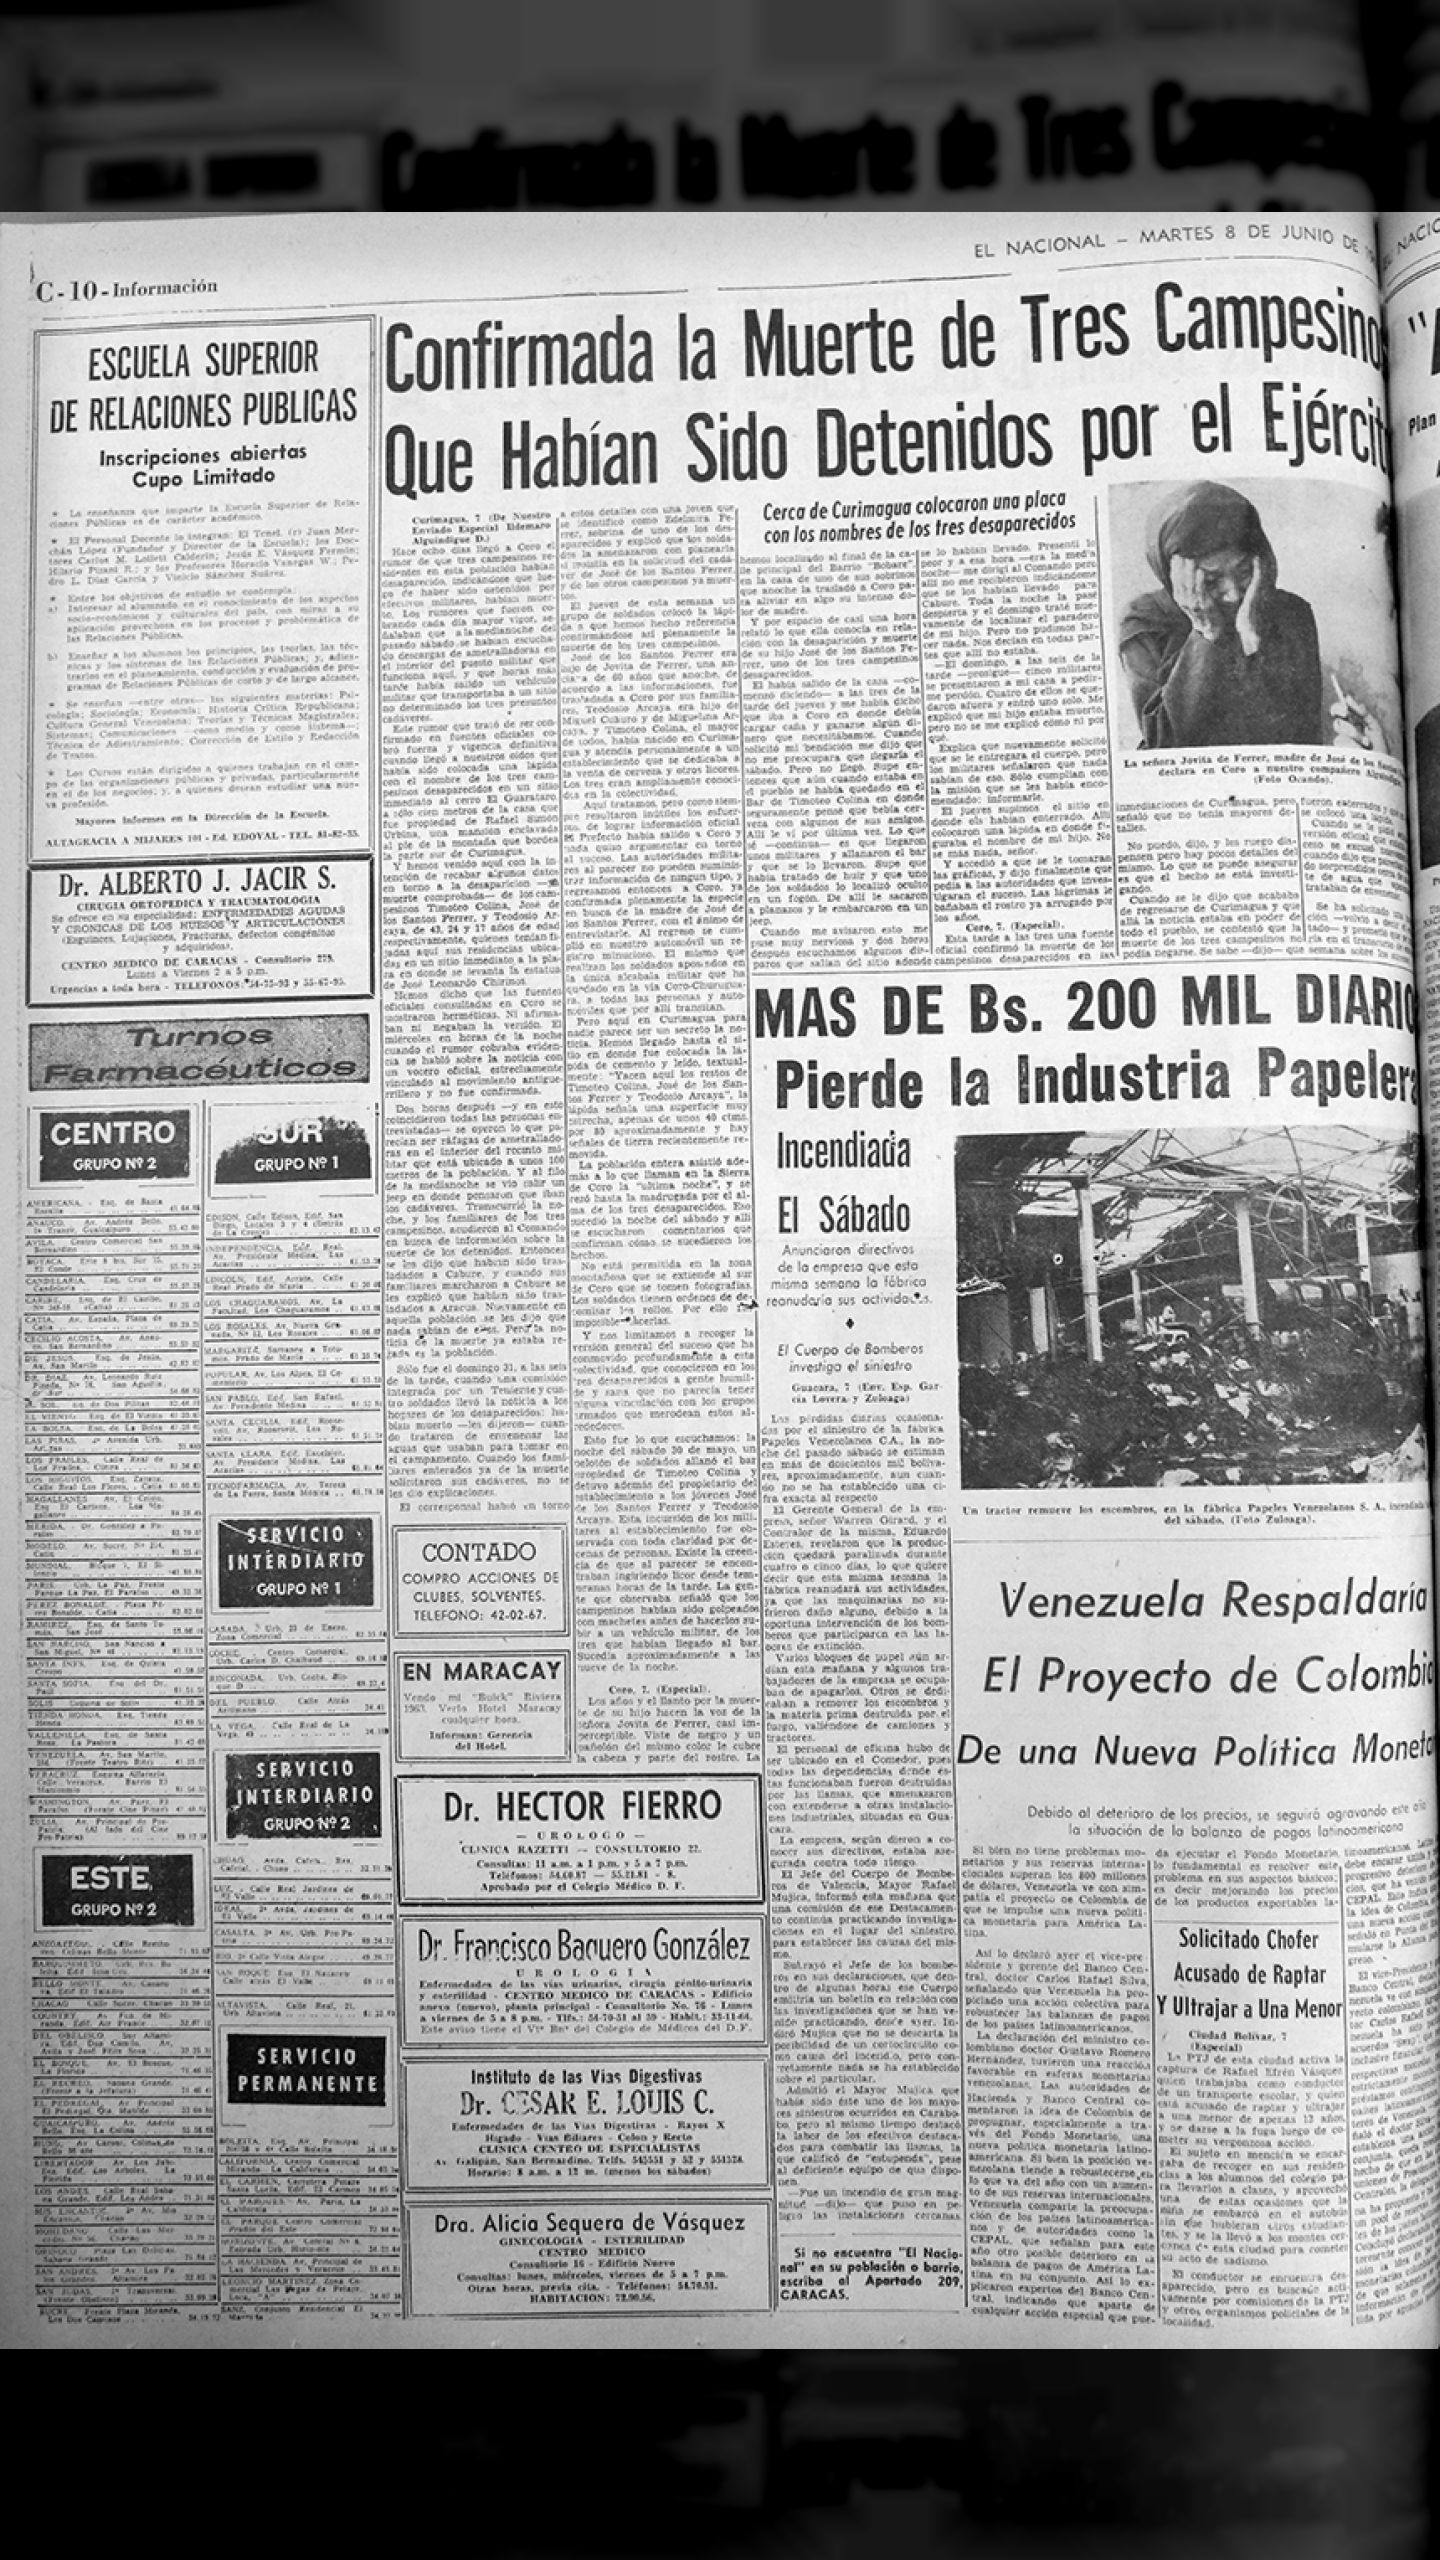 Confirmada la muerte de tres campesinos que habían sido detenidos por el ejército (El Nacional, 8 de octubre 1965)